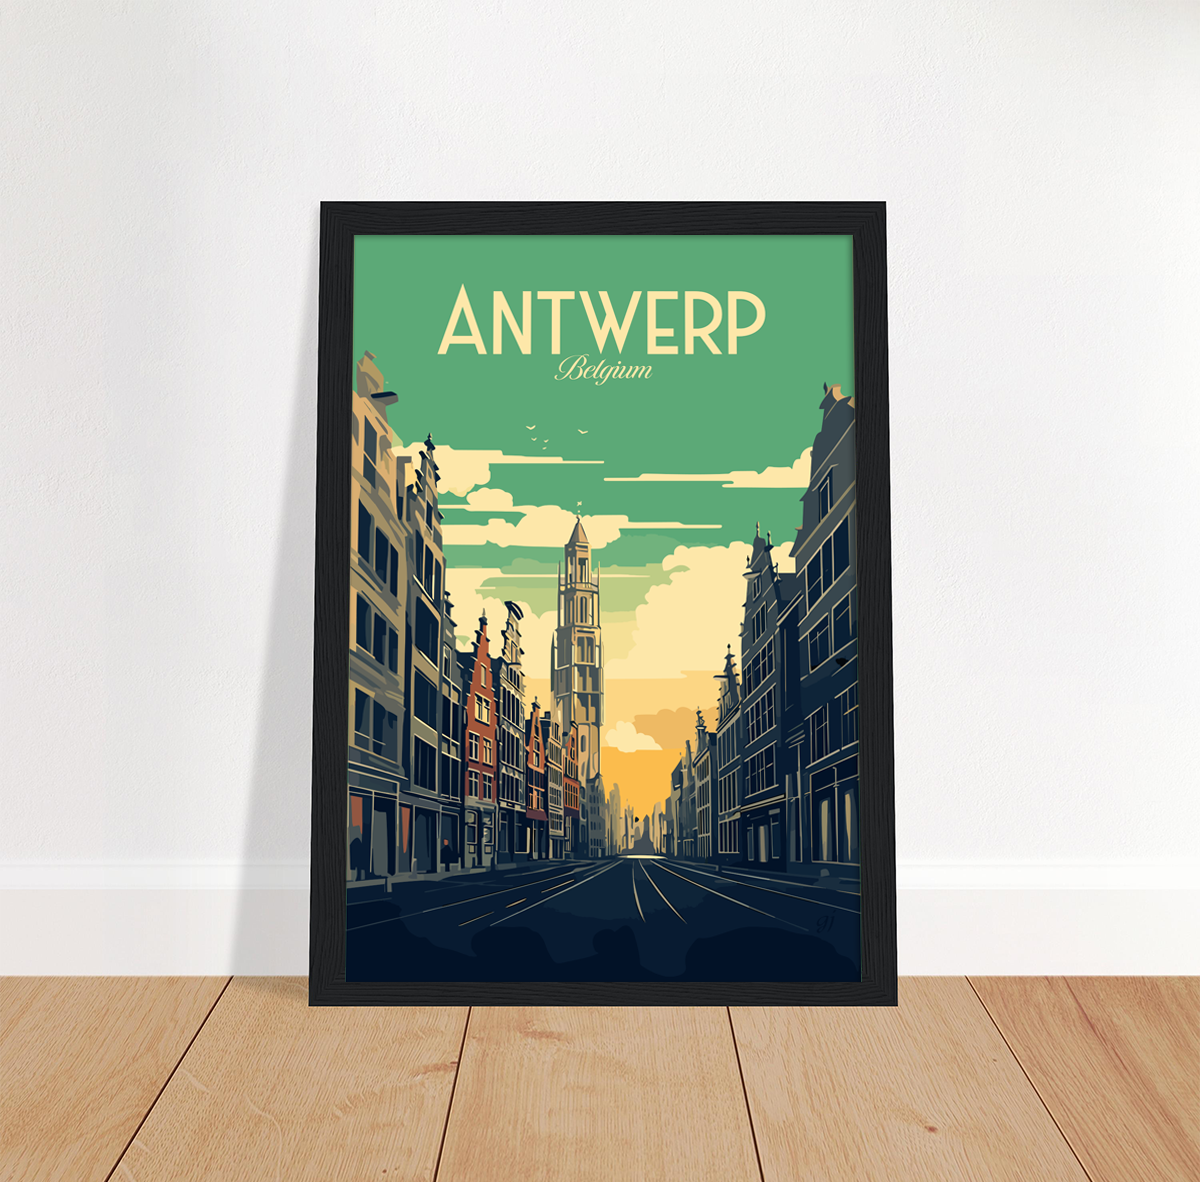 Antwerp poster by bon voyage design